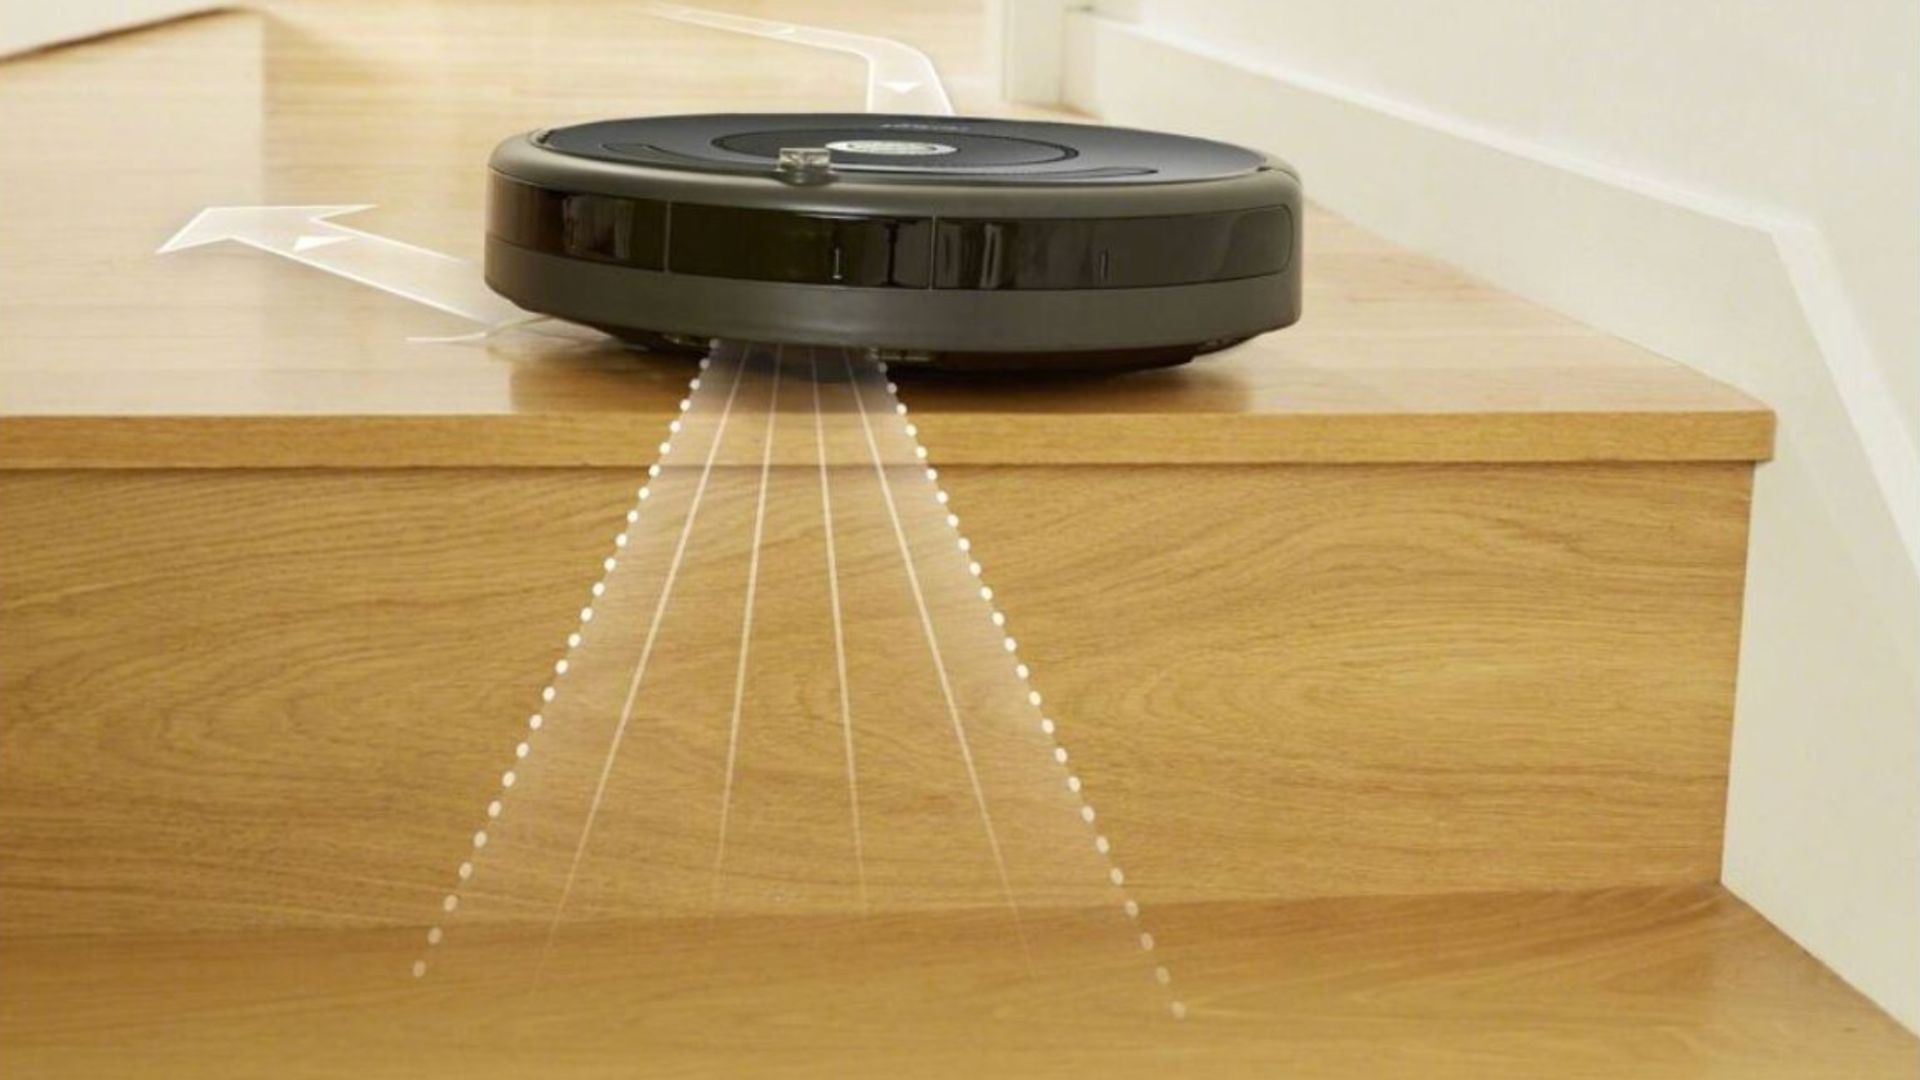 Avis & Test : Aspirateur Robot iRobot Roomba 697 